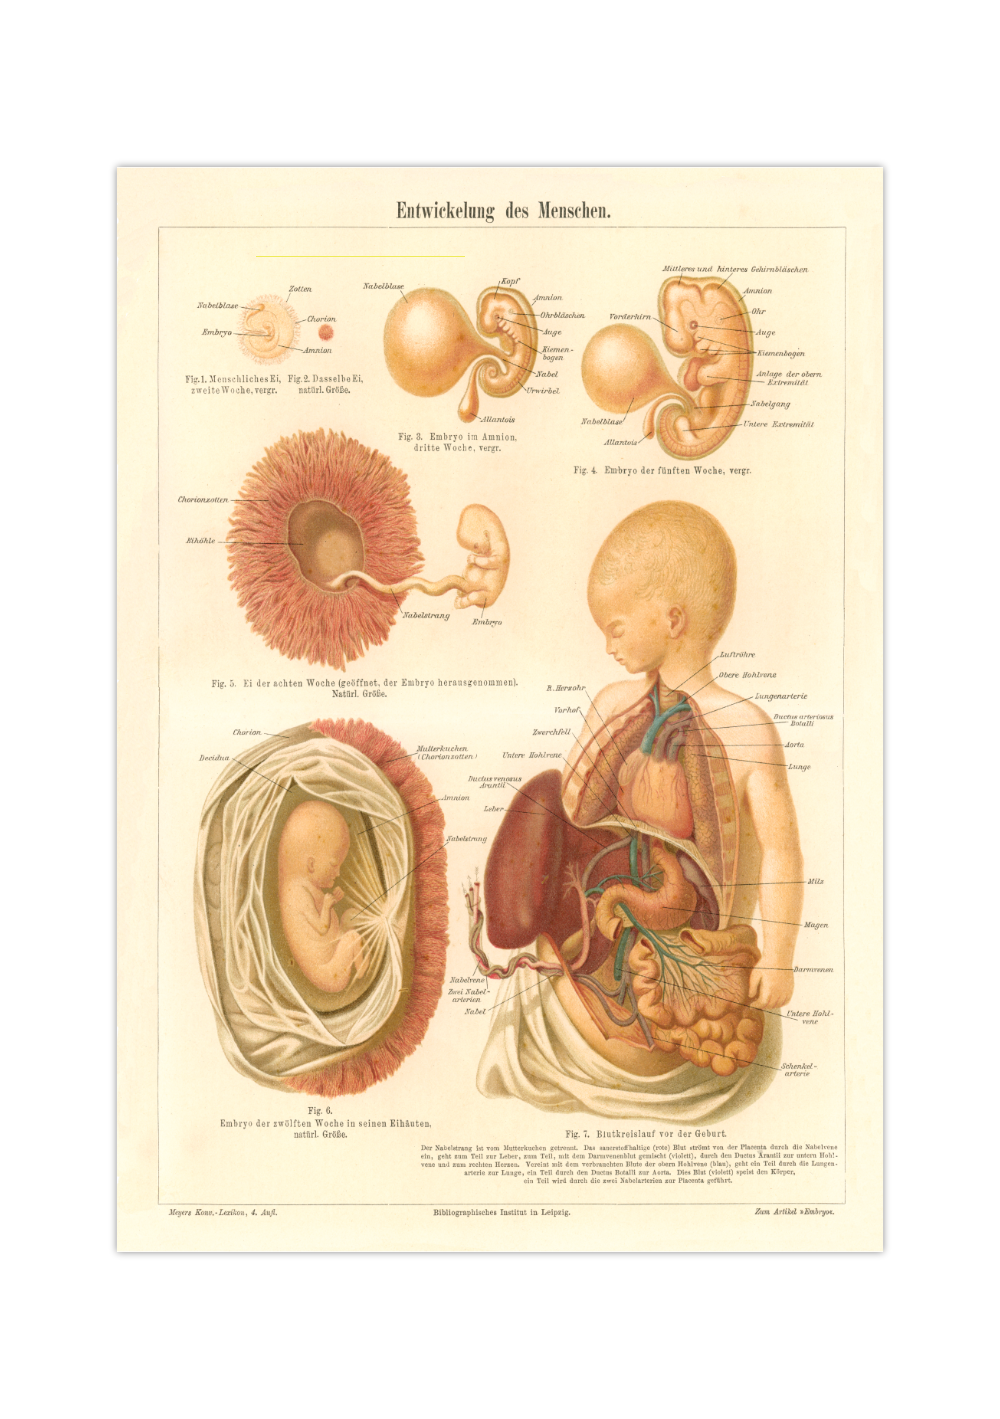 Das medizinische Poster der Entwicklung des Menschen ist eine Vintage Lithographie aus Meyers Koversations-Lexikon aus dem Jahr 1890.